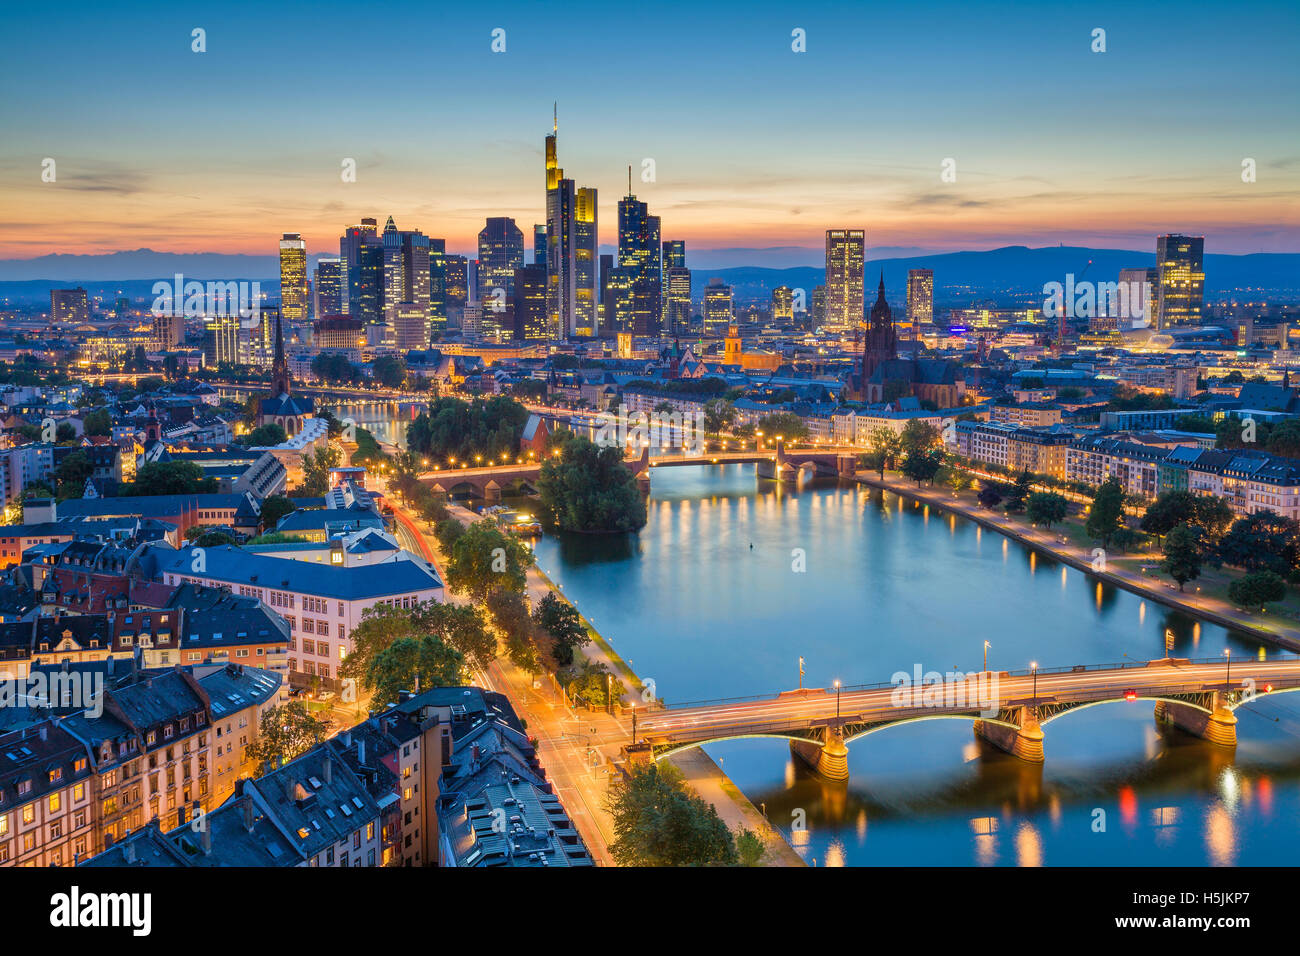 Frankfurt am Main. Image de Frankfurt am Main skyline pendant le crépuscule heure bleue. Banque D'Images